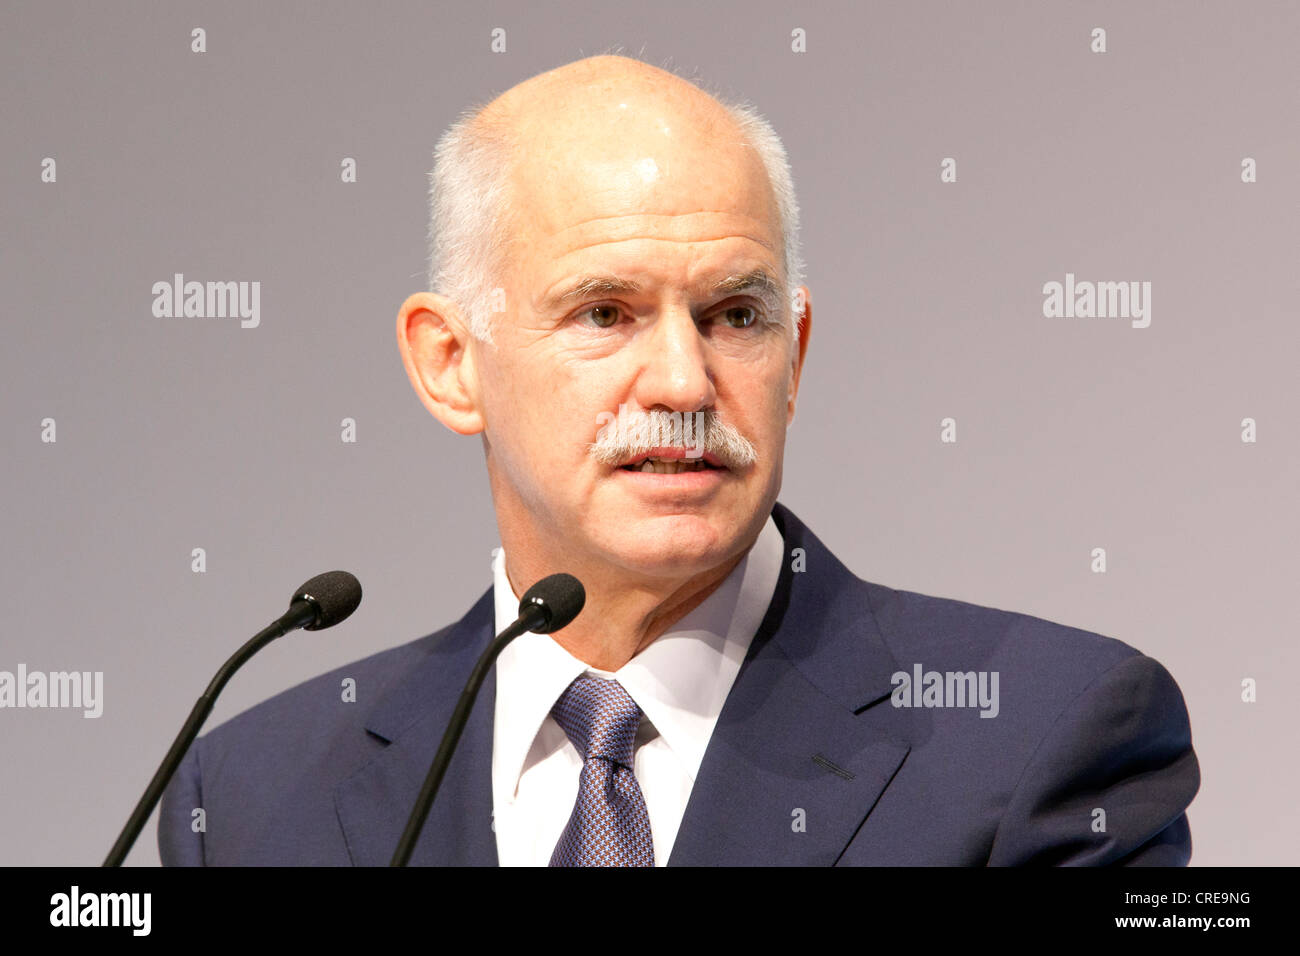 Andrea Giorgos Papandreou, Premier Ministre de la Grèce, de l'industrie allemande BDI 24, 27 septembre 2011 à Berlin, Allemagne, Europe Banque D'Images